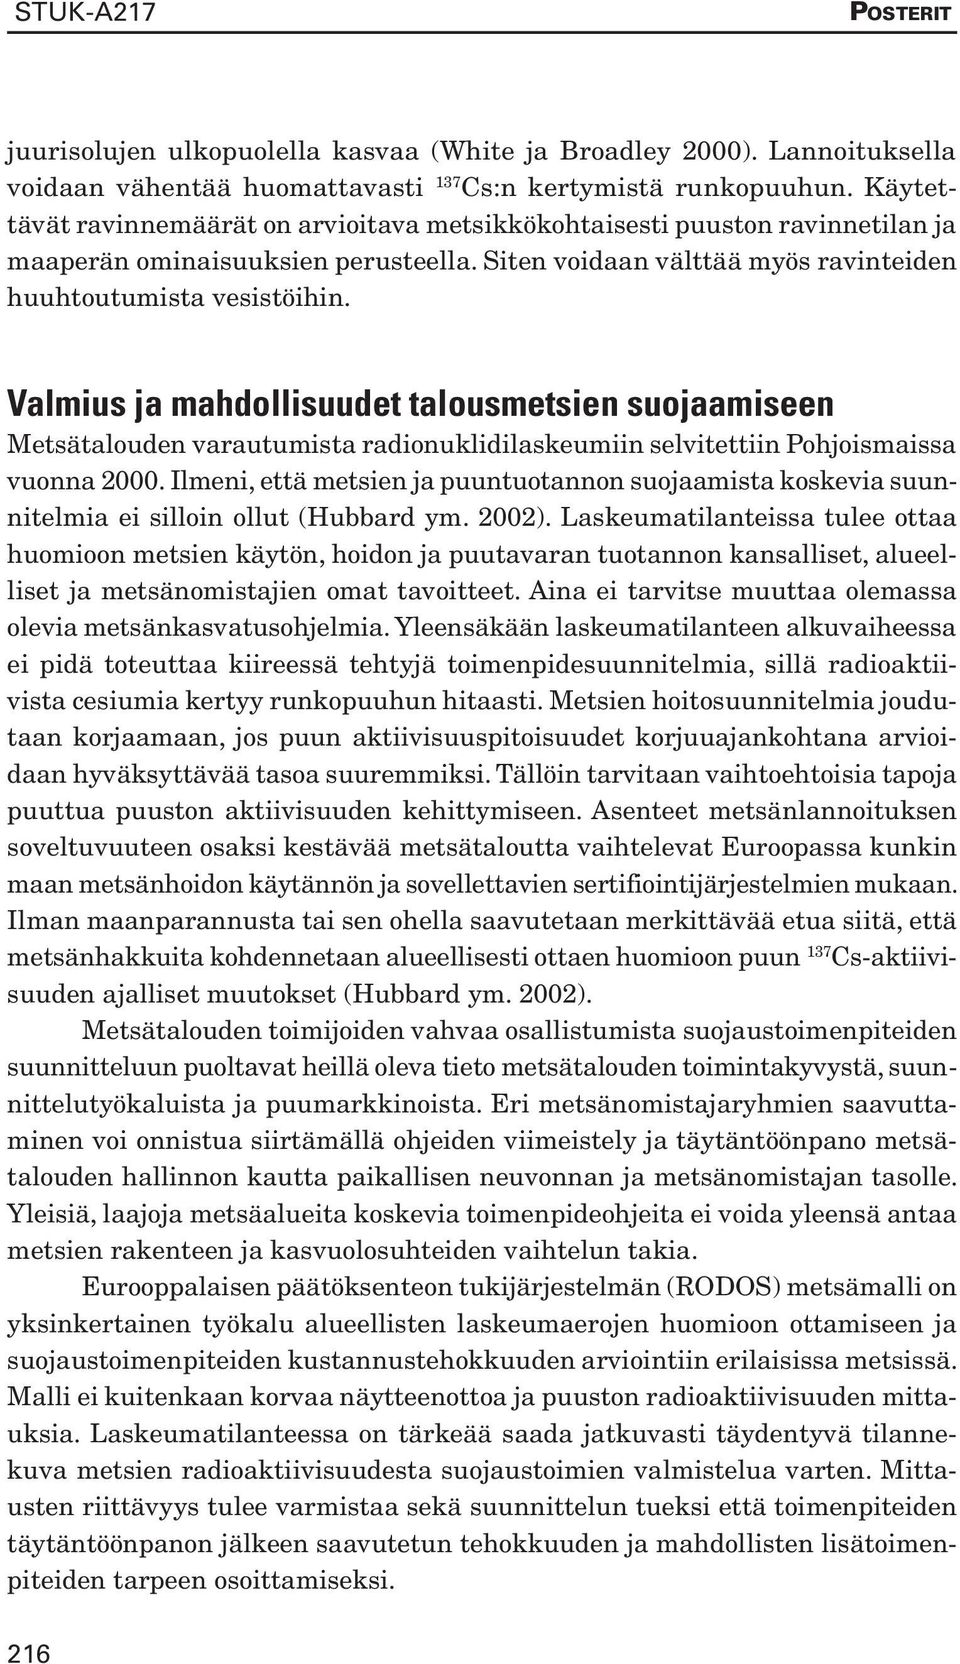 Valmius ja mahdollisuudet talousmetsien suojaamiseen Metsätalouden varautumista radionuklidilaskeumiin selvitettiin Pohjoismaissa vuonna 2000.